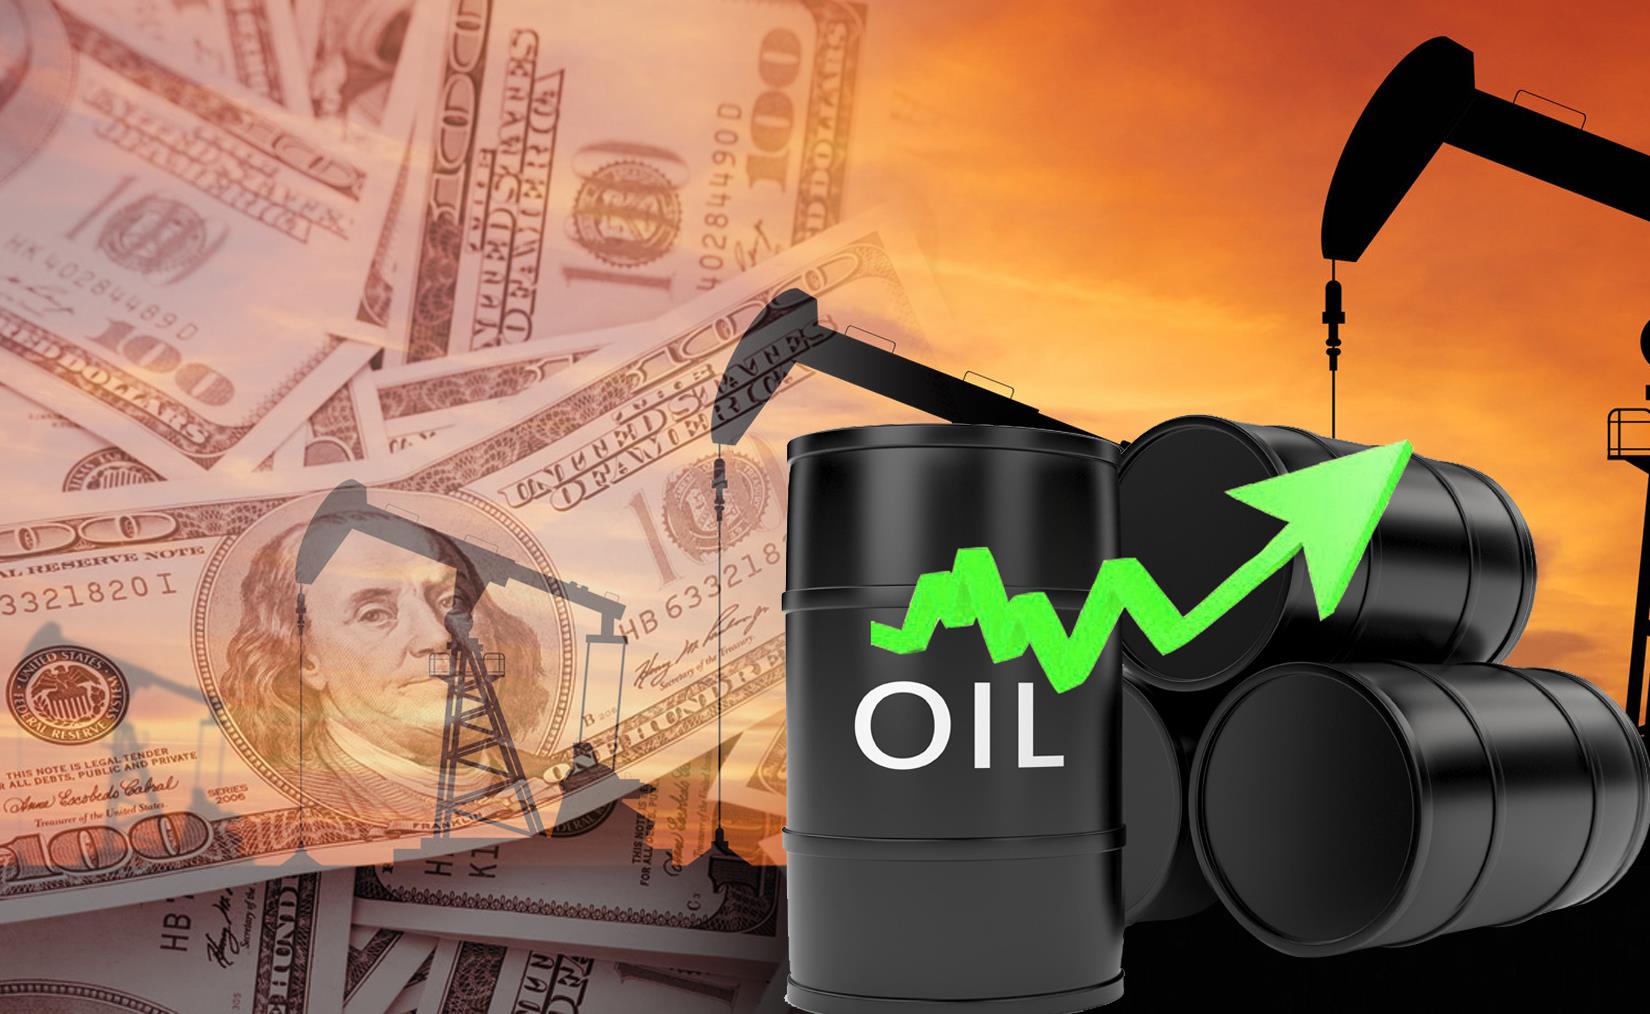 Kuwait oil prices up USD 1.04 Fri. to USD 48.80 pb - KPC | MENAFN.COM